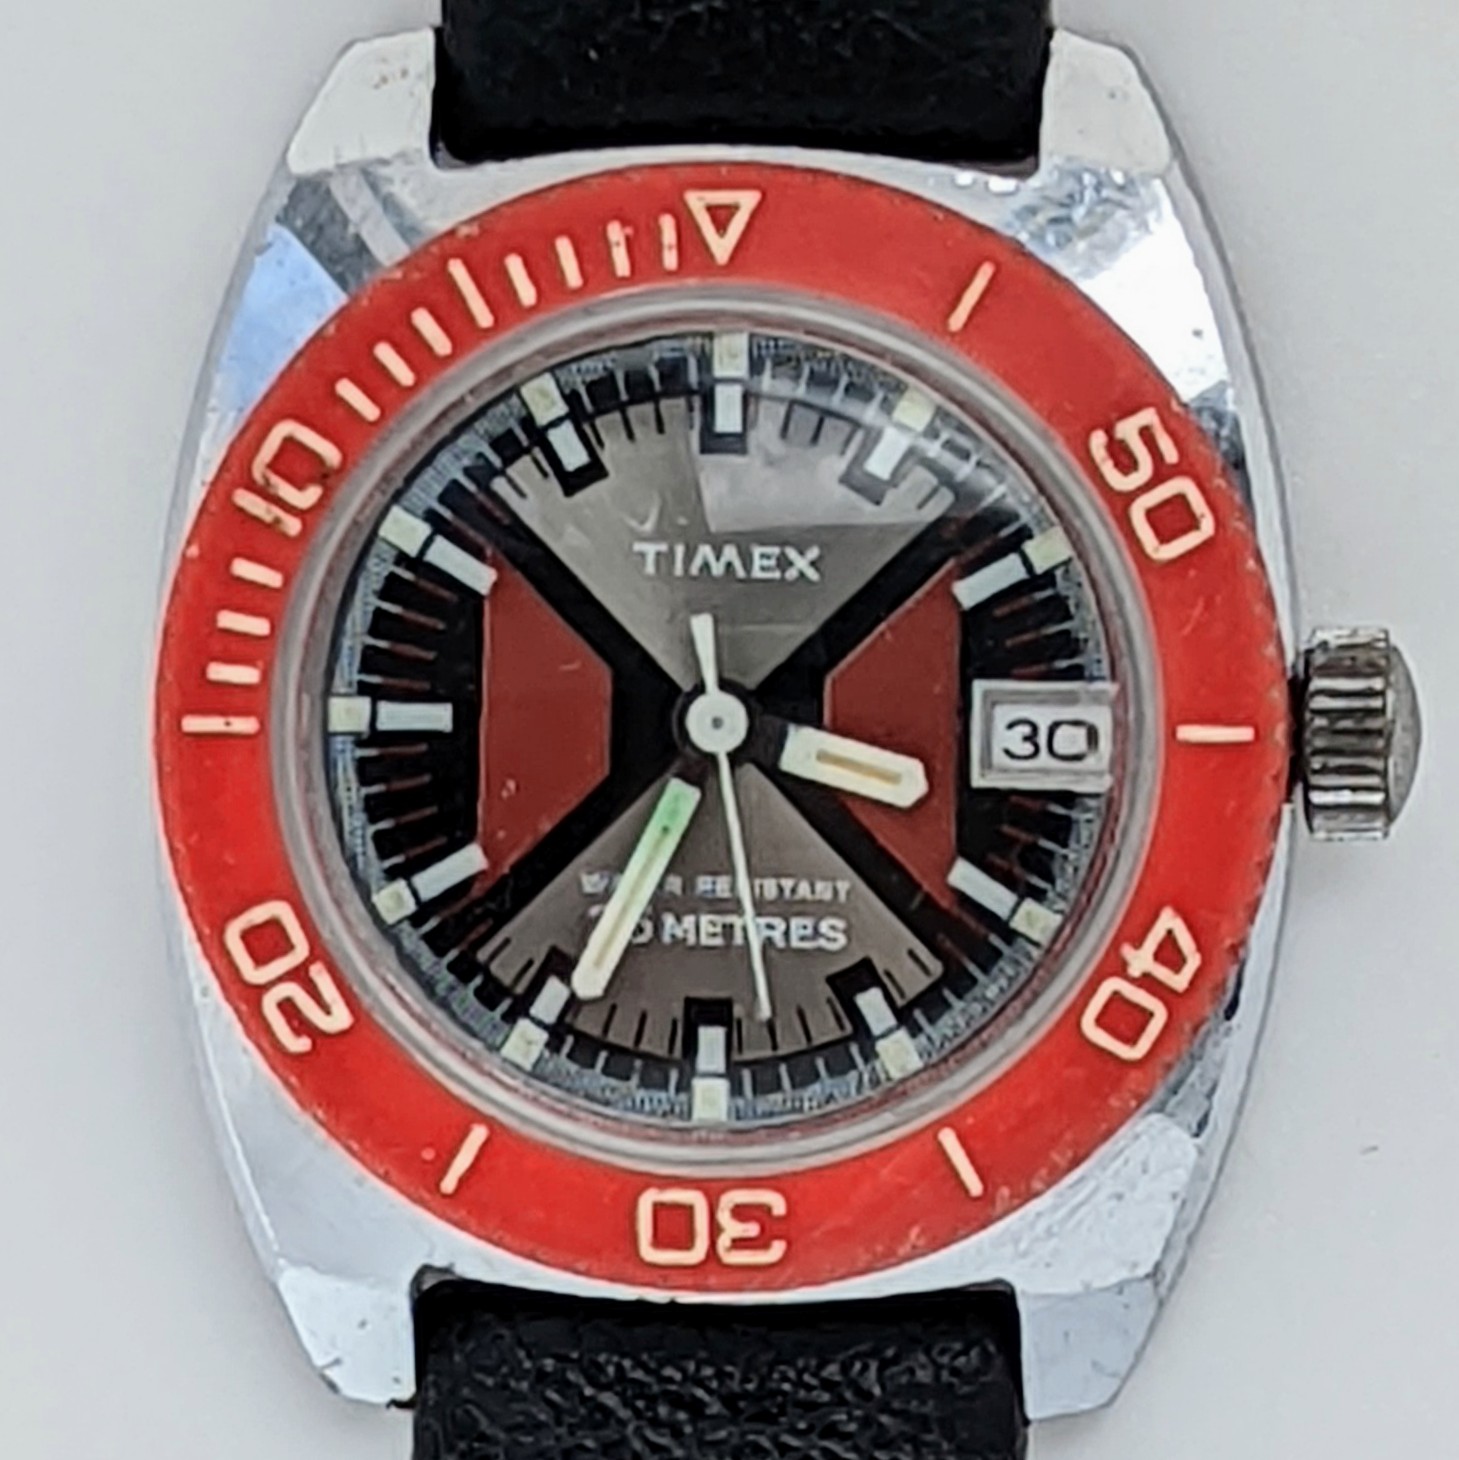 Timex Sprite 23775 02574 [1974] Dive Watch